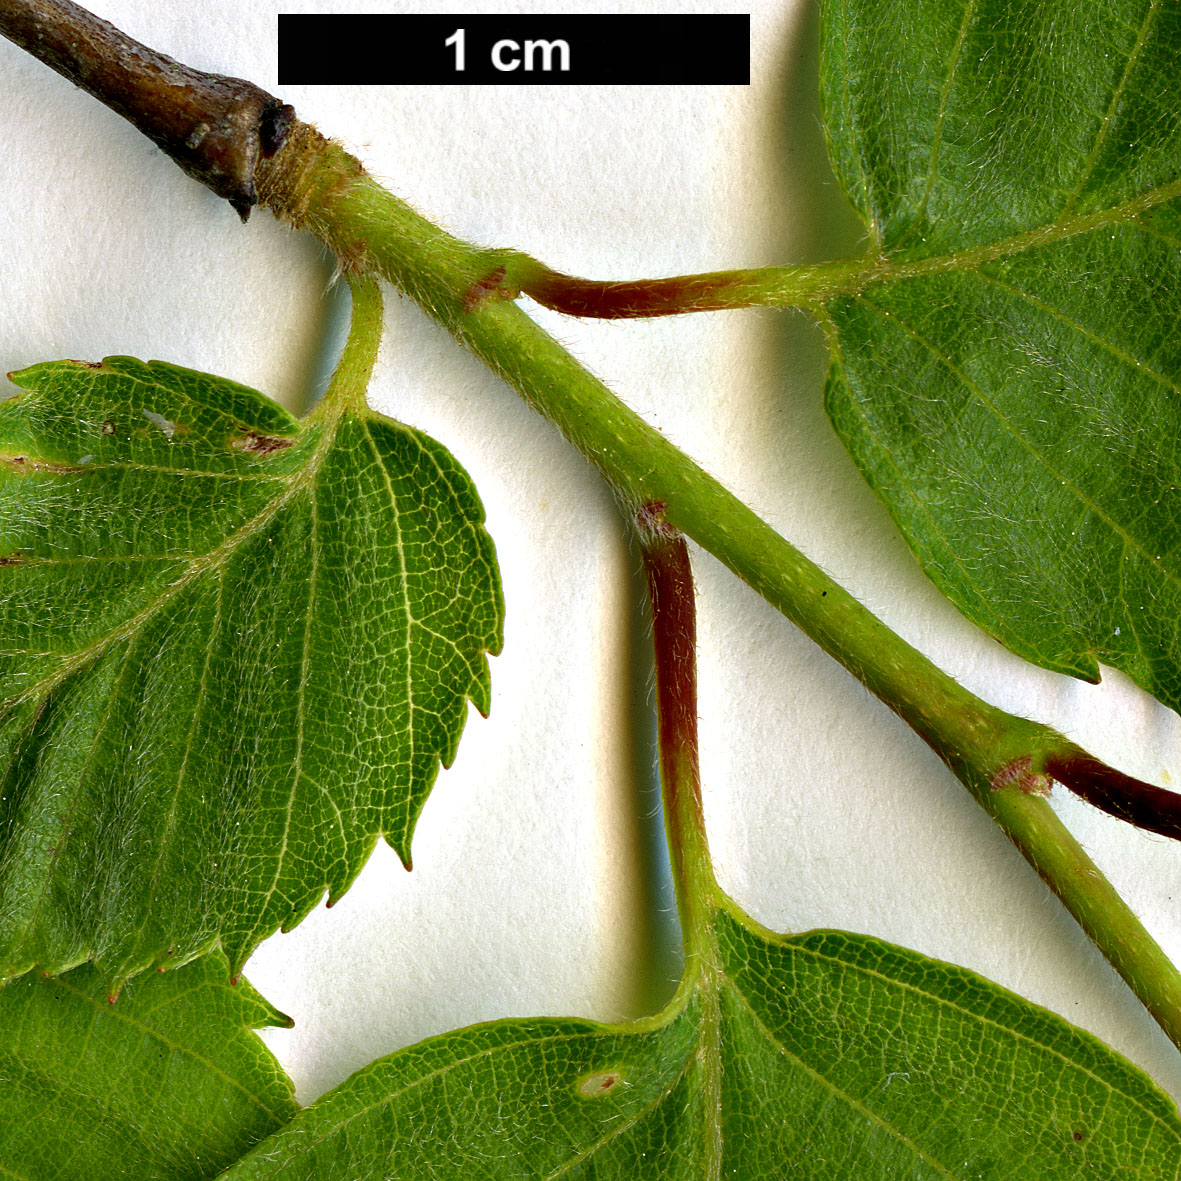 High resolution image: Family: Betulaceae - Genus: Carpinus - Taxon: monbeigiana